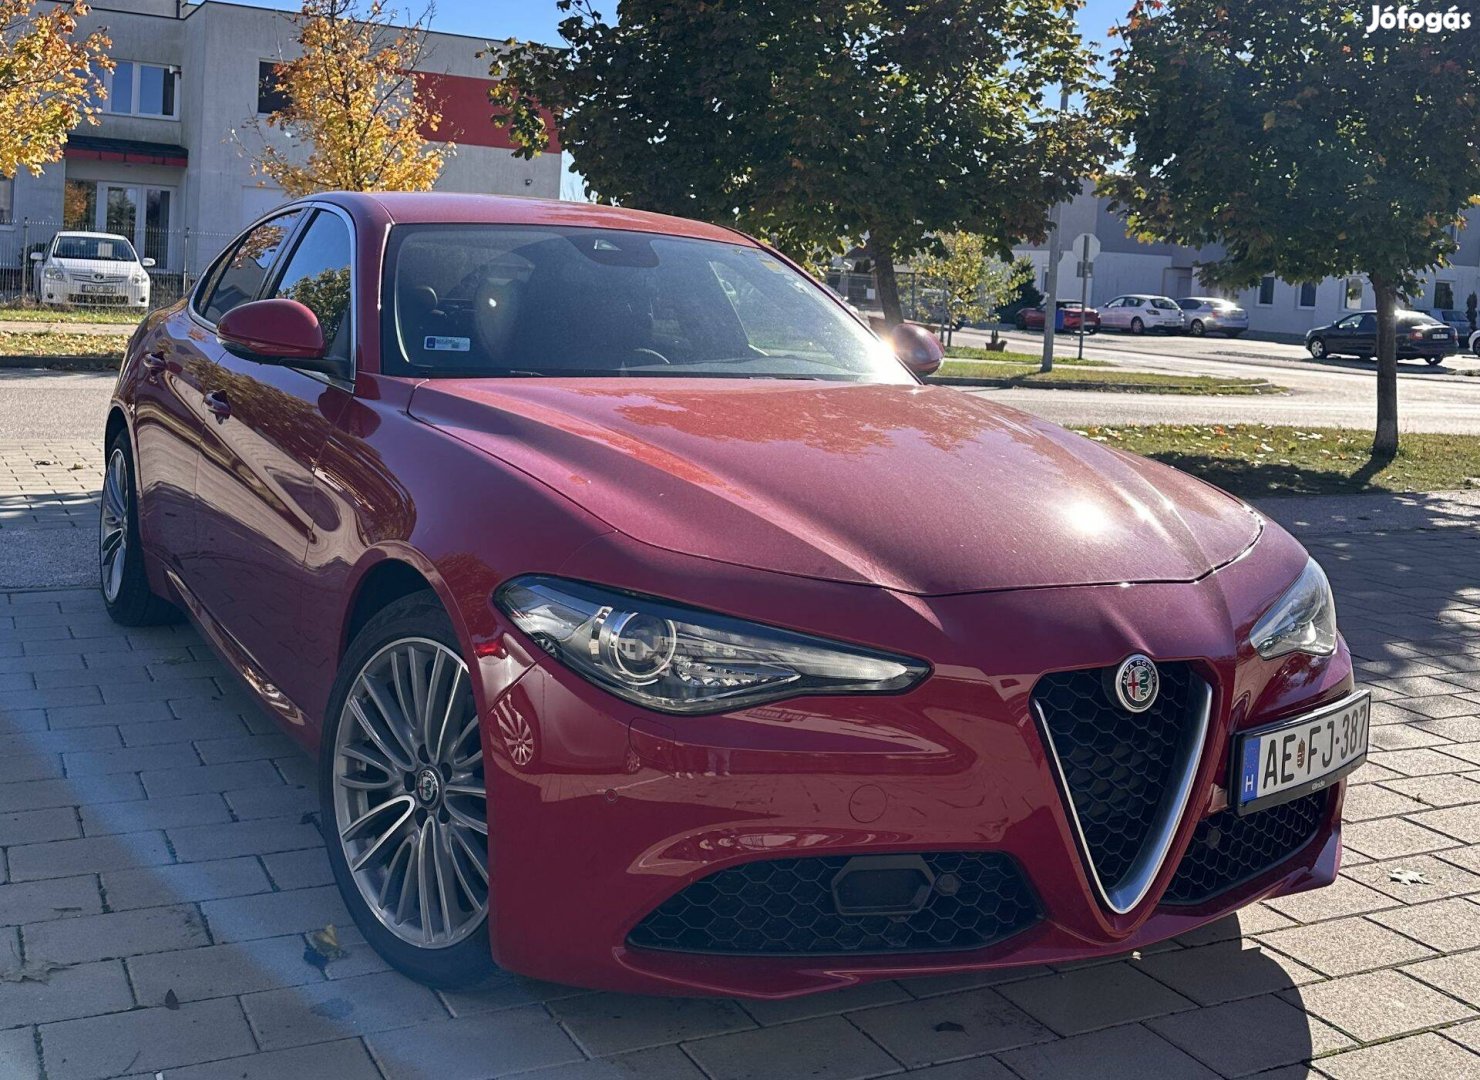 Eladó az egyik legszebb Alfa Romeo!